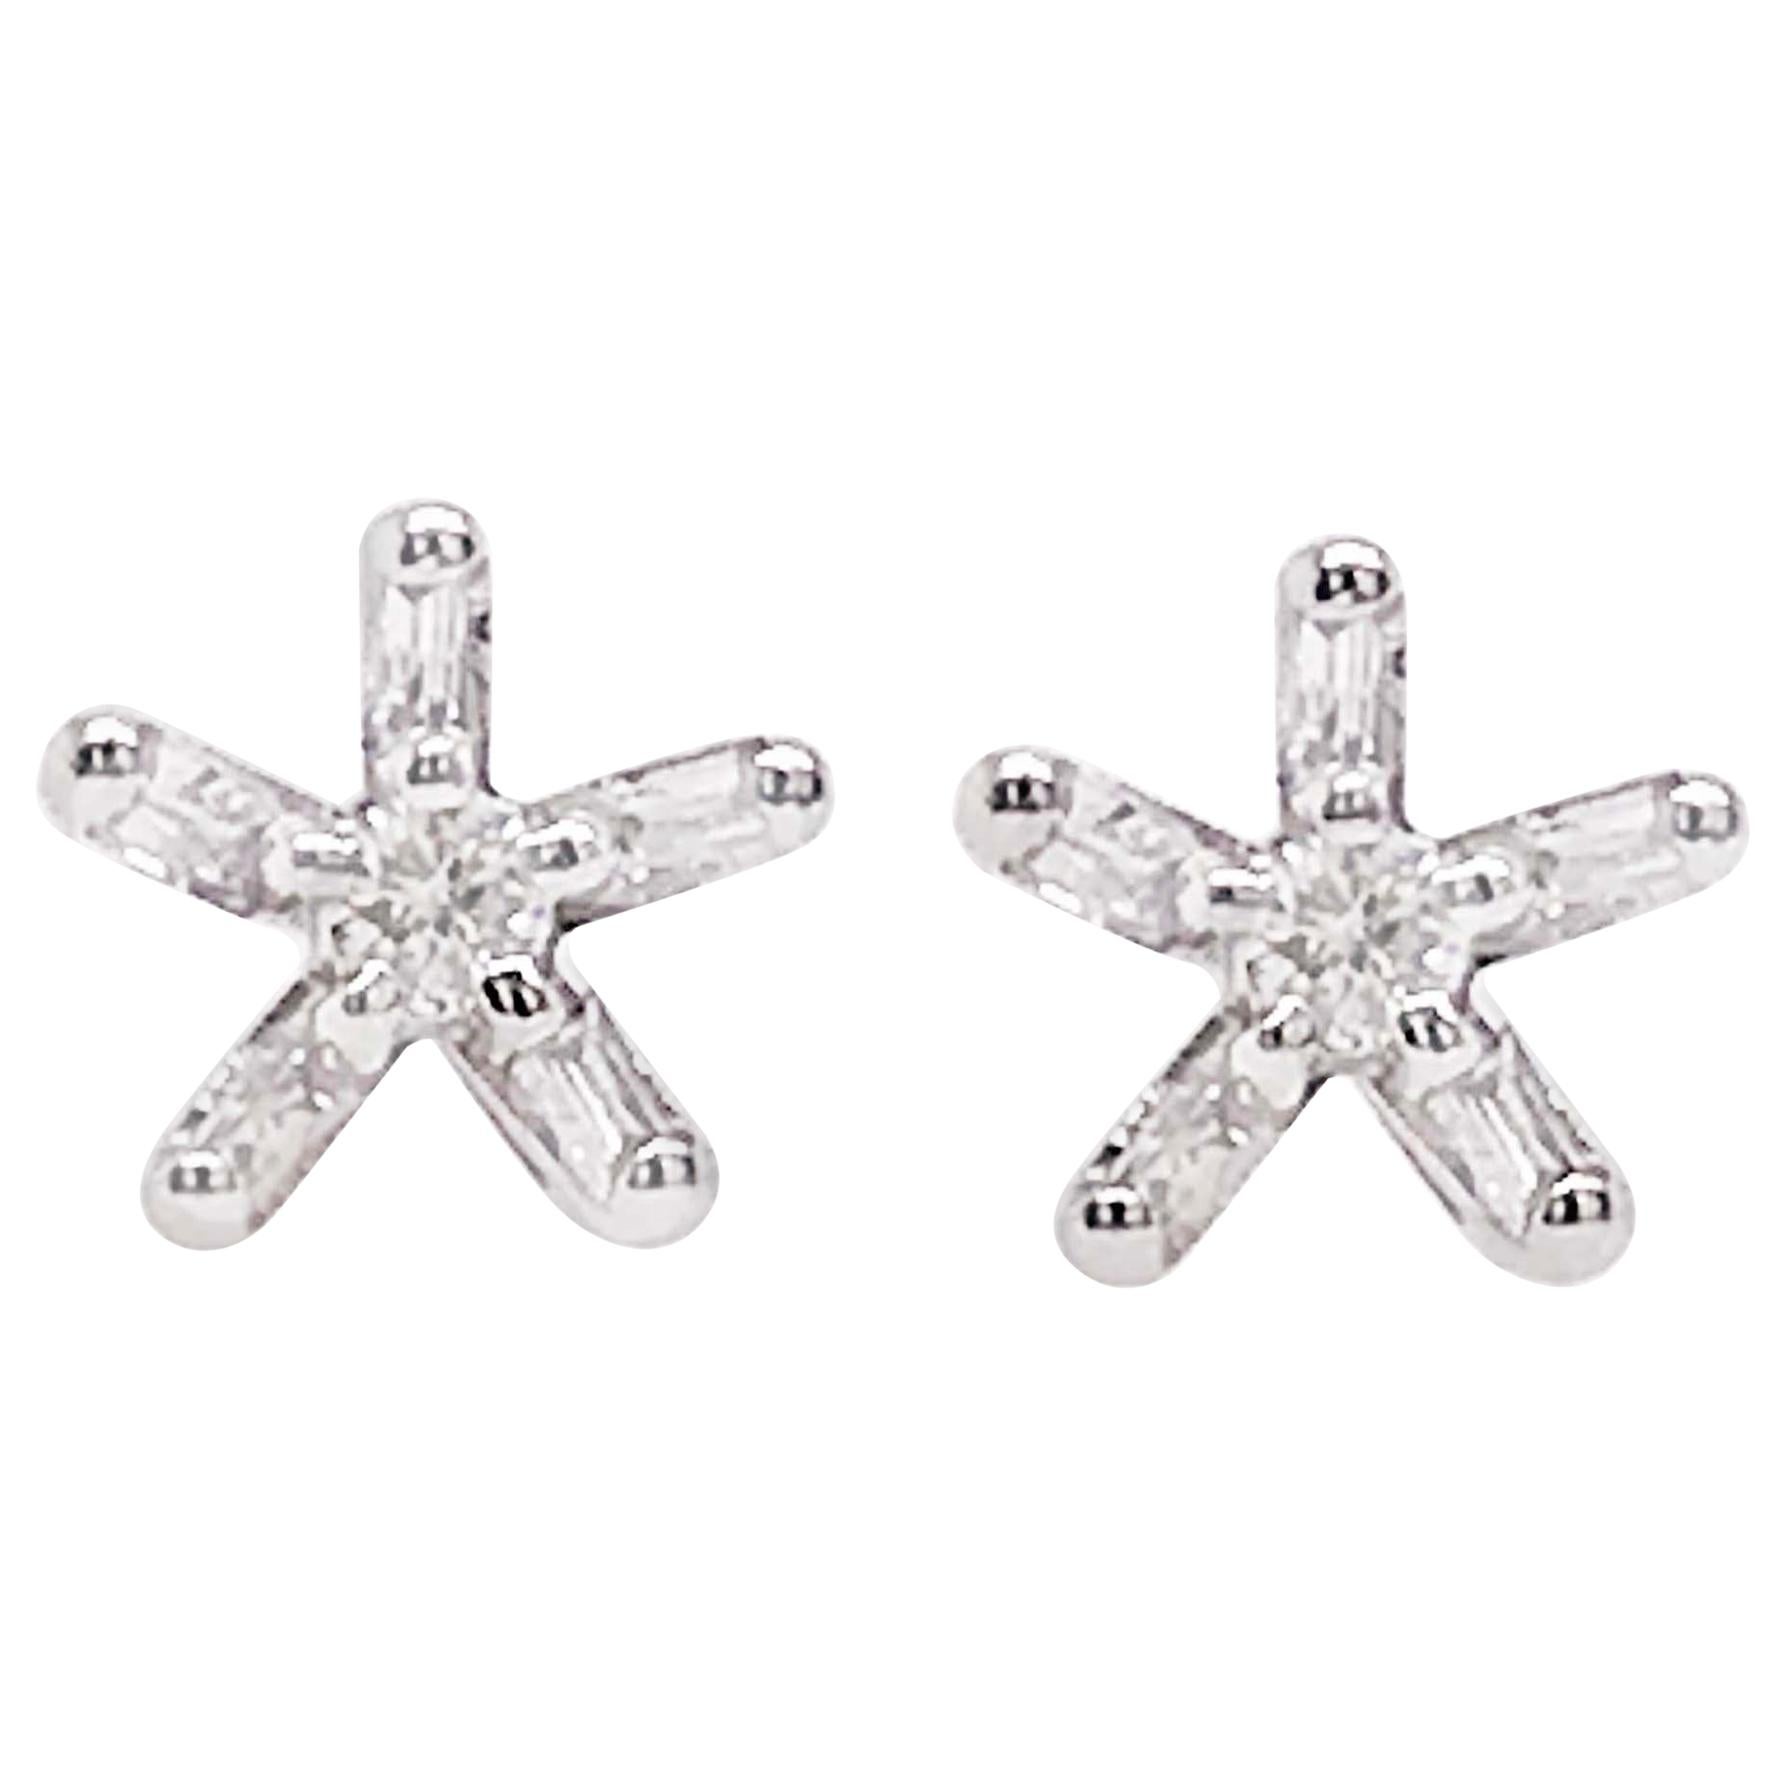 Diamond Star Flower Earring Studs, White Gold Diamond Star Earrings Flower Stud